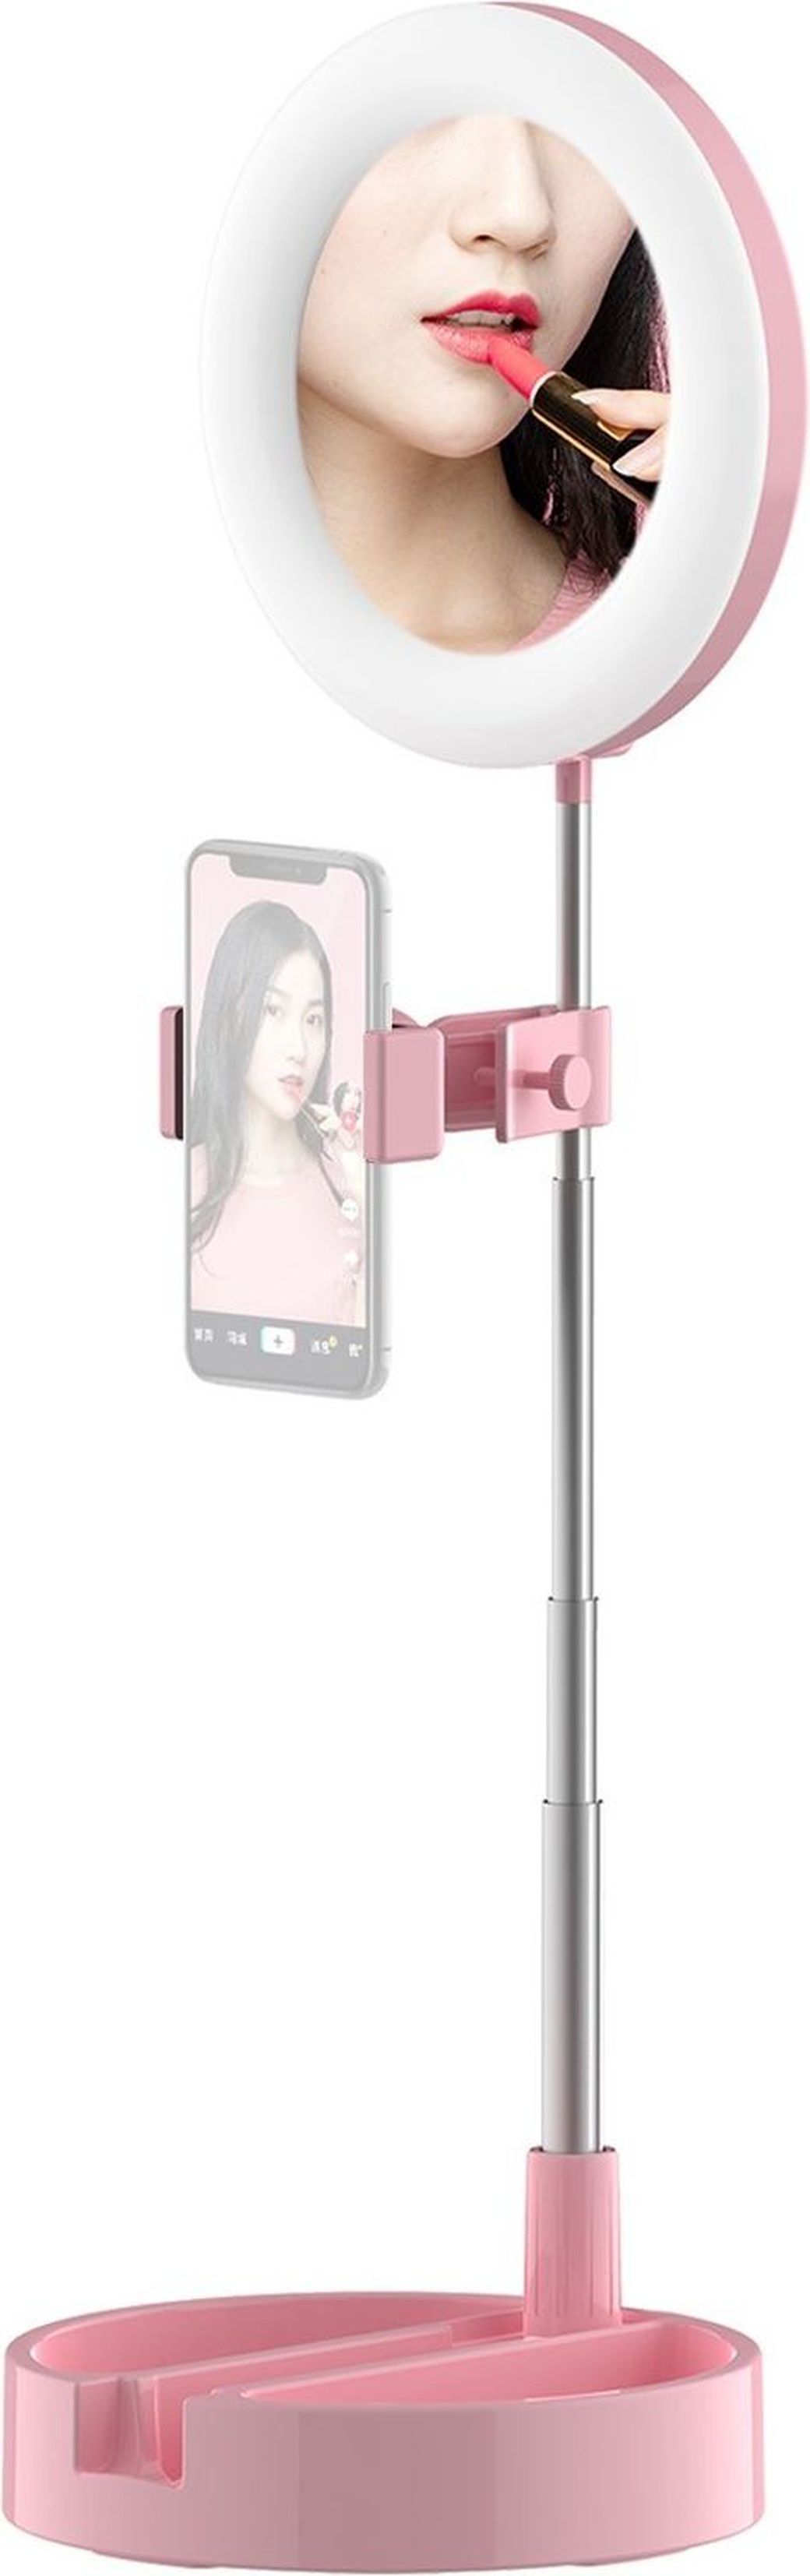 Кольцевая лампа с зеркалом, с выдвижным штативом и зажимом смартфона 3 режима и 10 уровней яркости, розовый фото